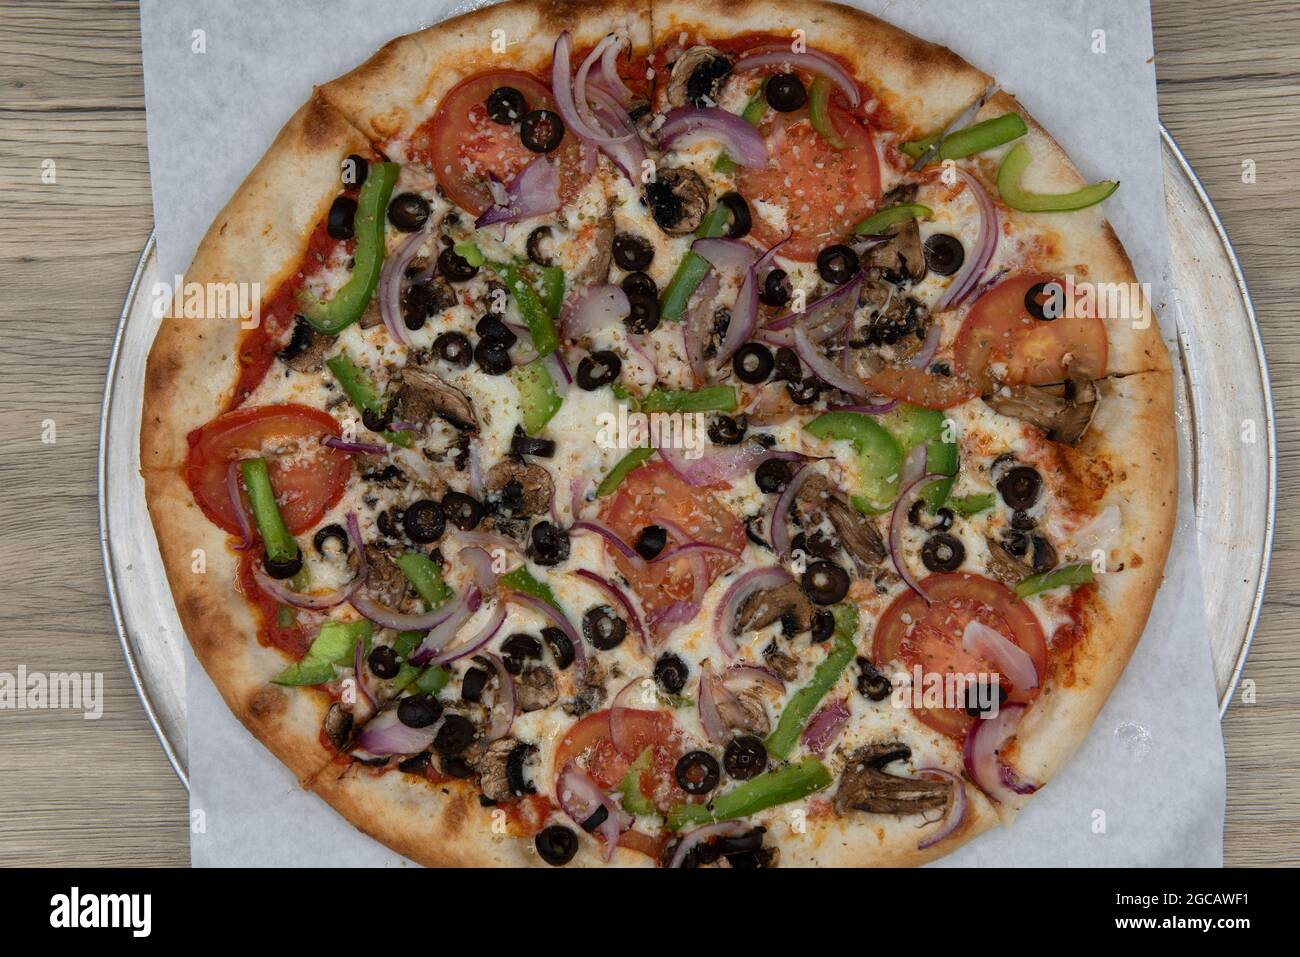 Vista dall'alto della pizza vegetariana con farciture di verdure e crosta croccante per un pasto completo in famiglia. Foto Stock